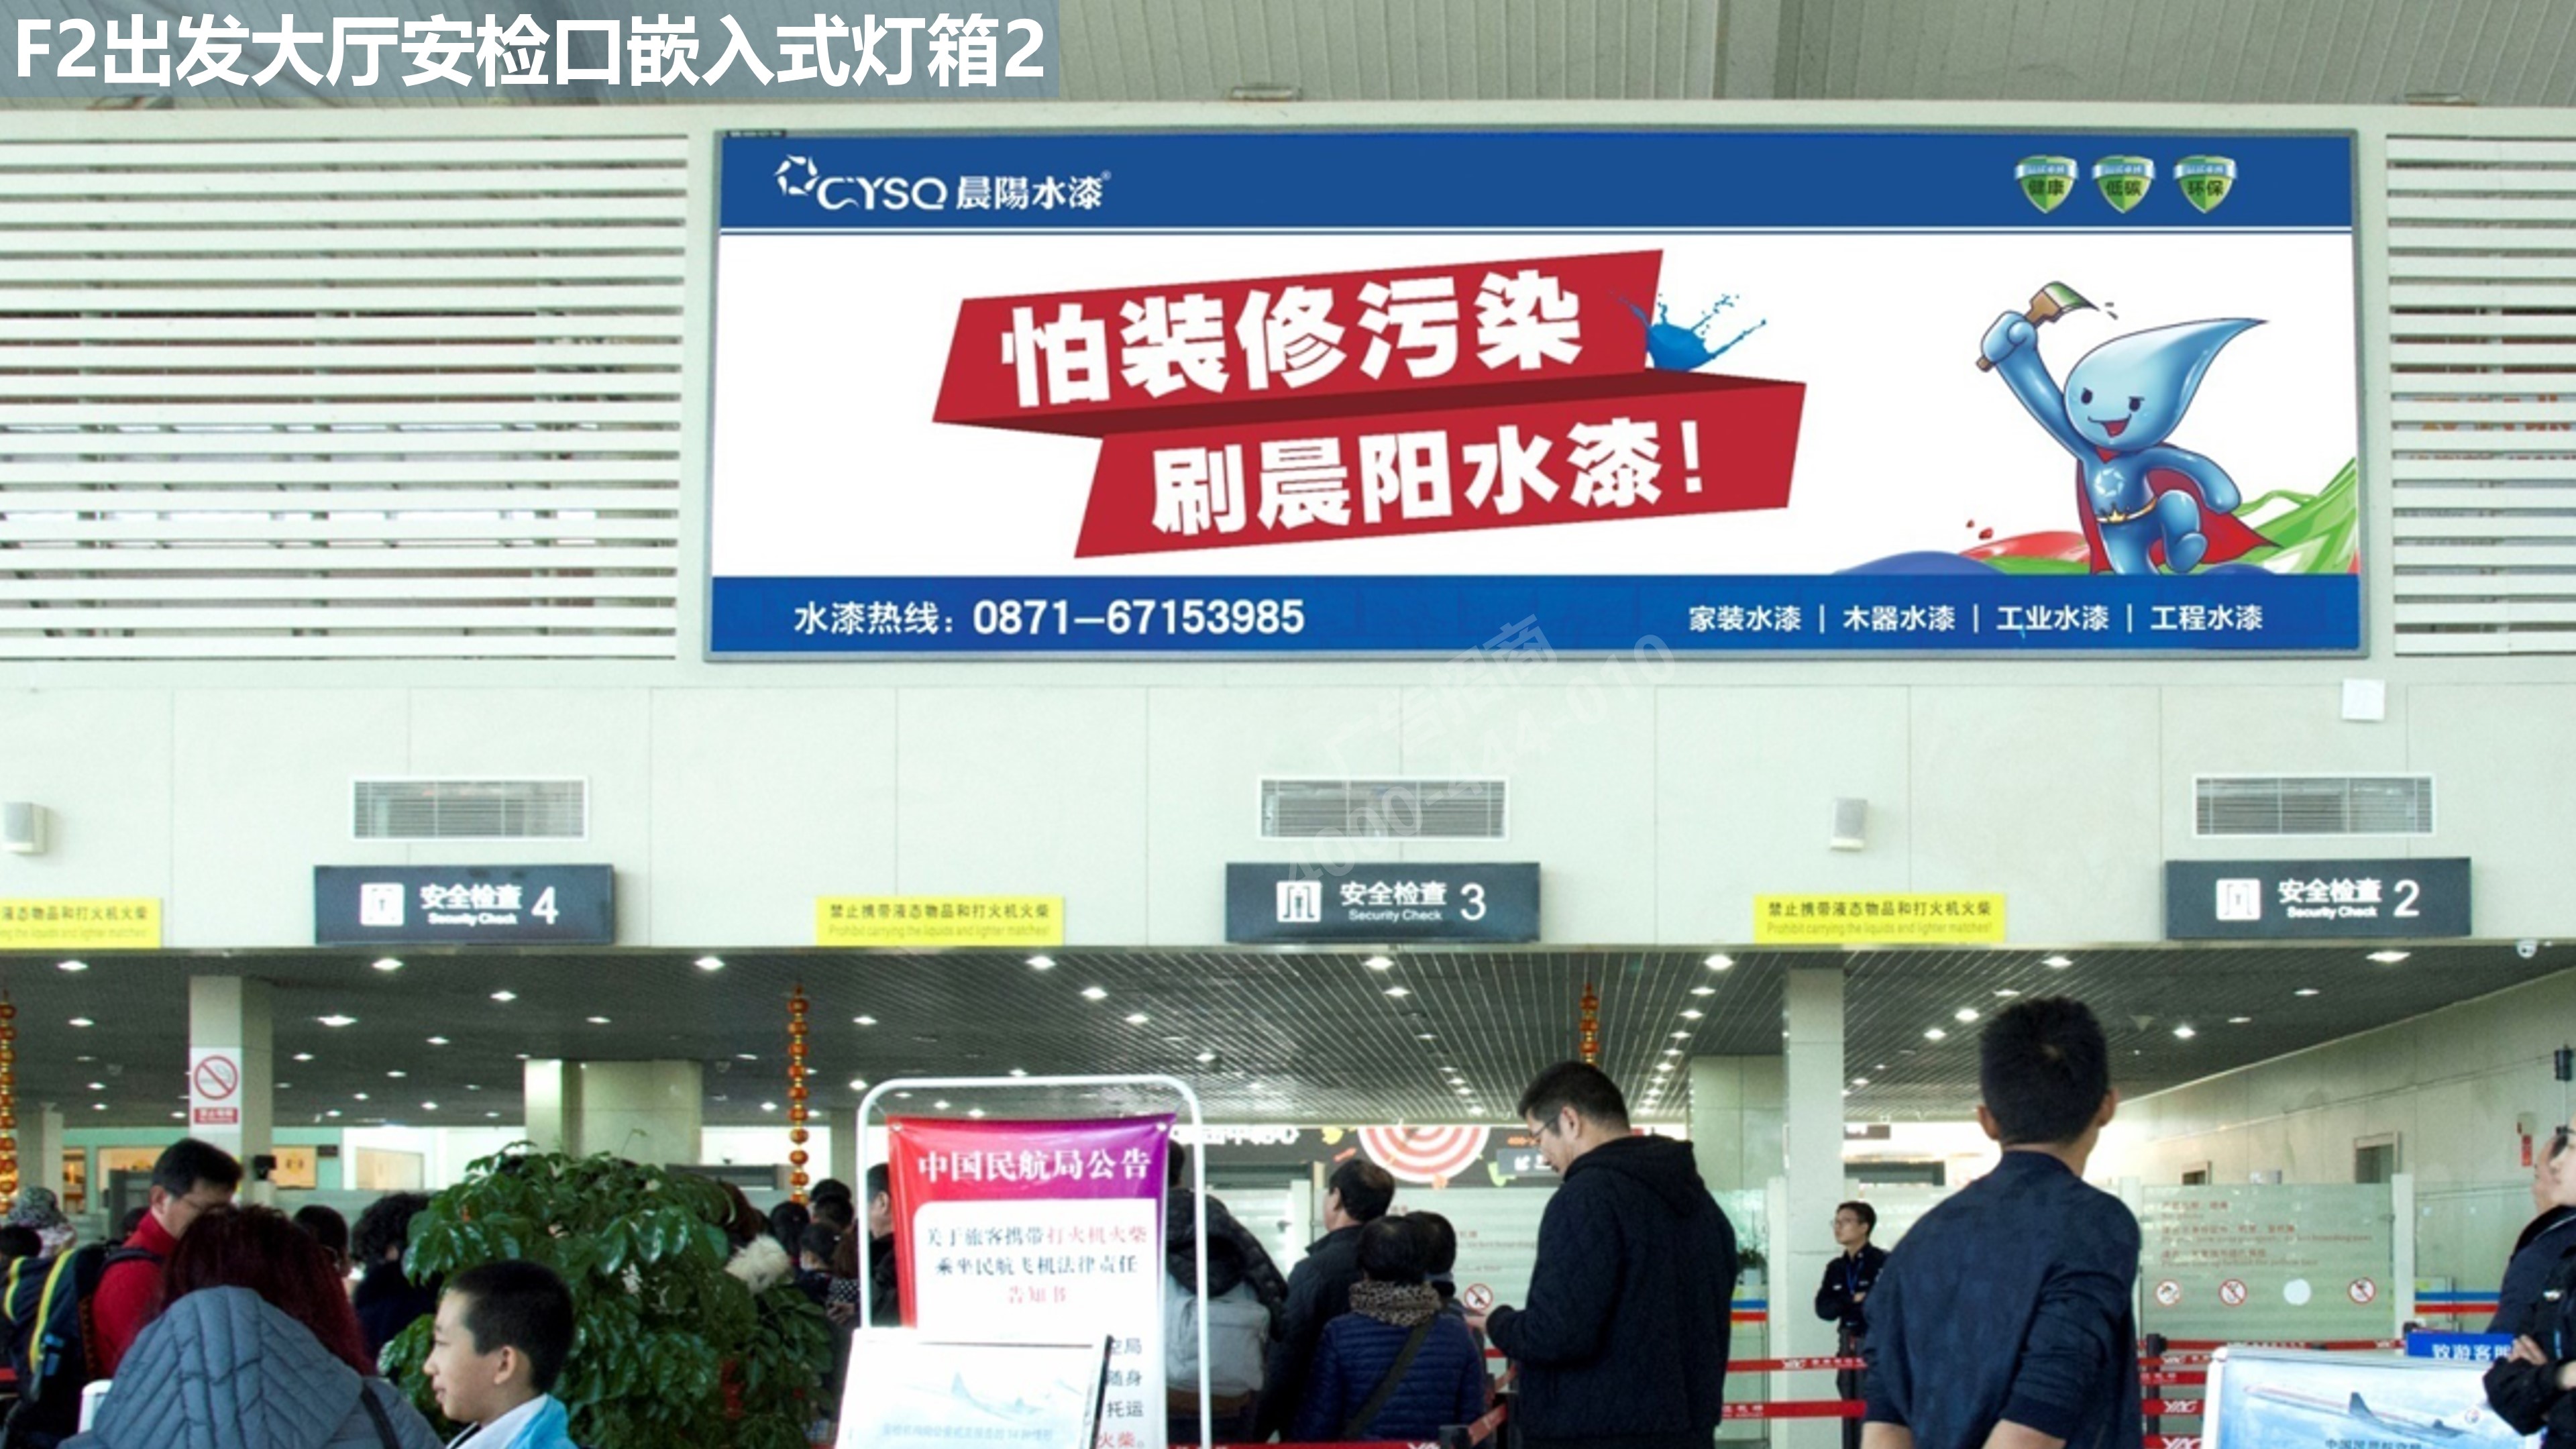 丽江机场出发大厅广告3